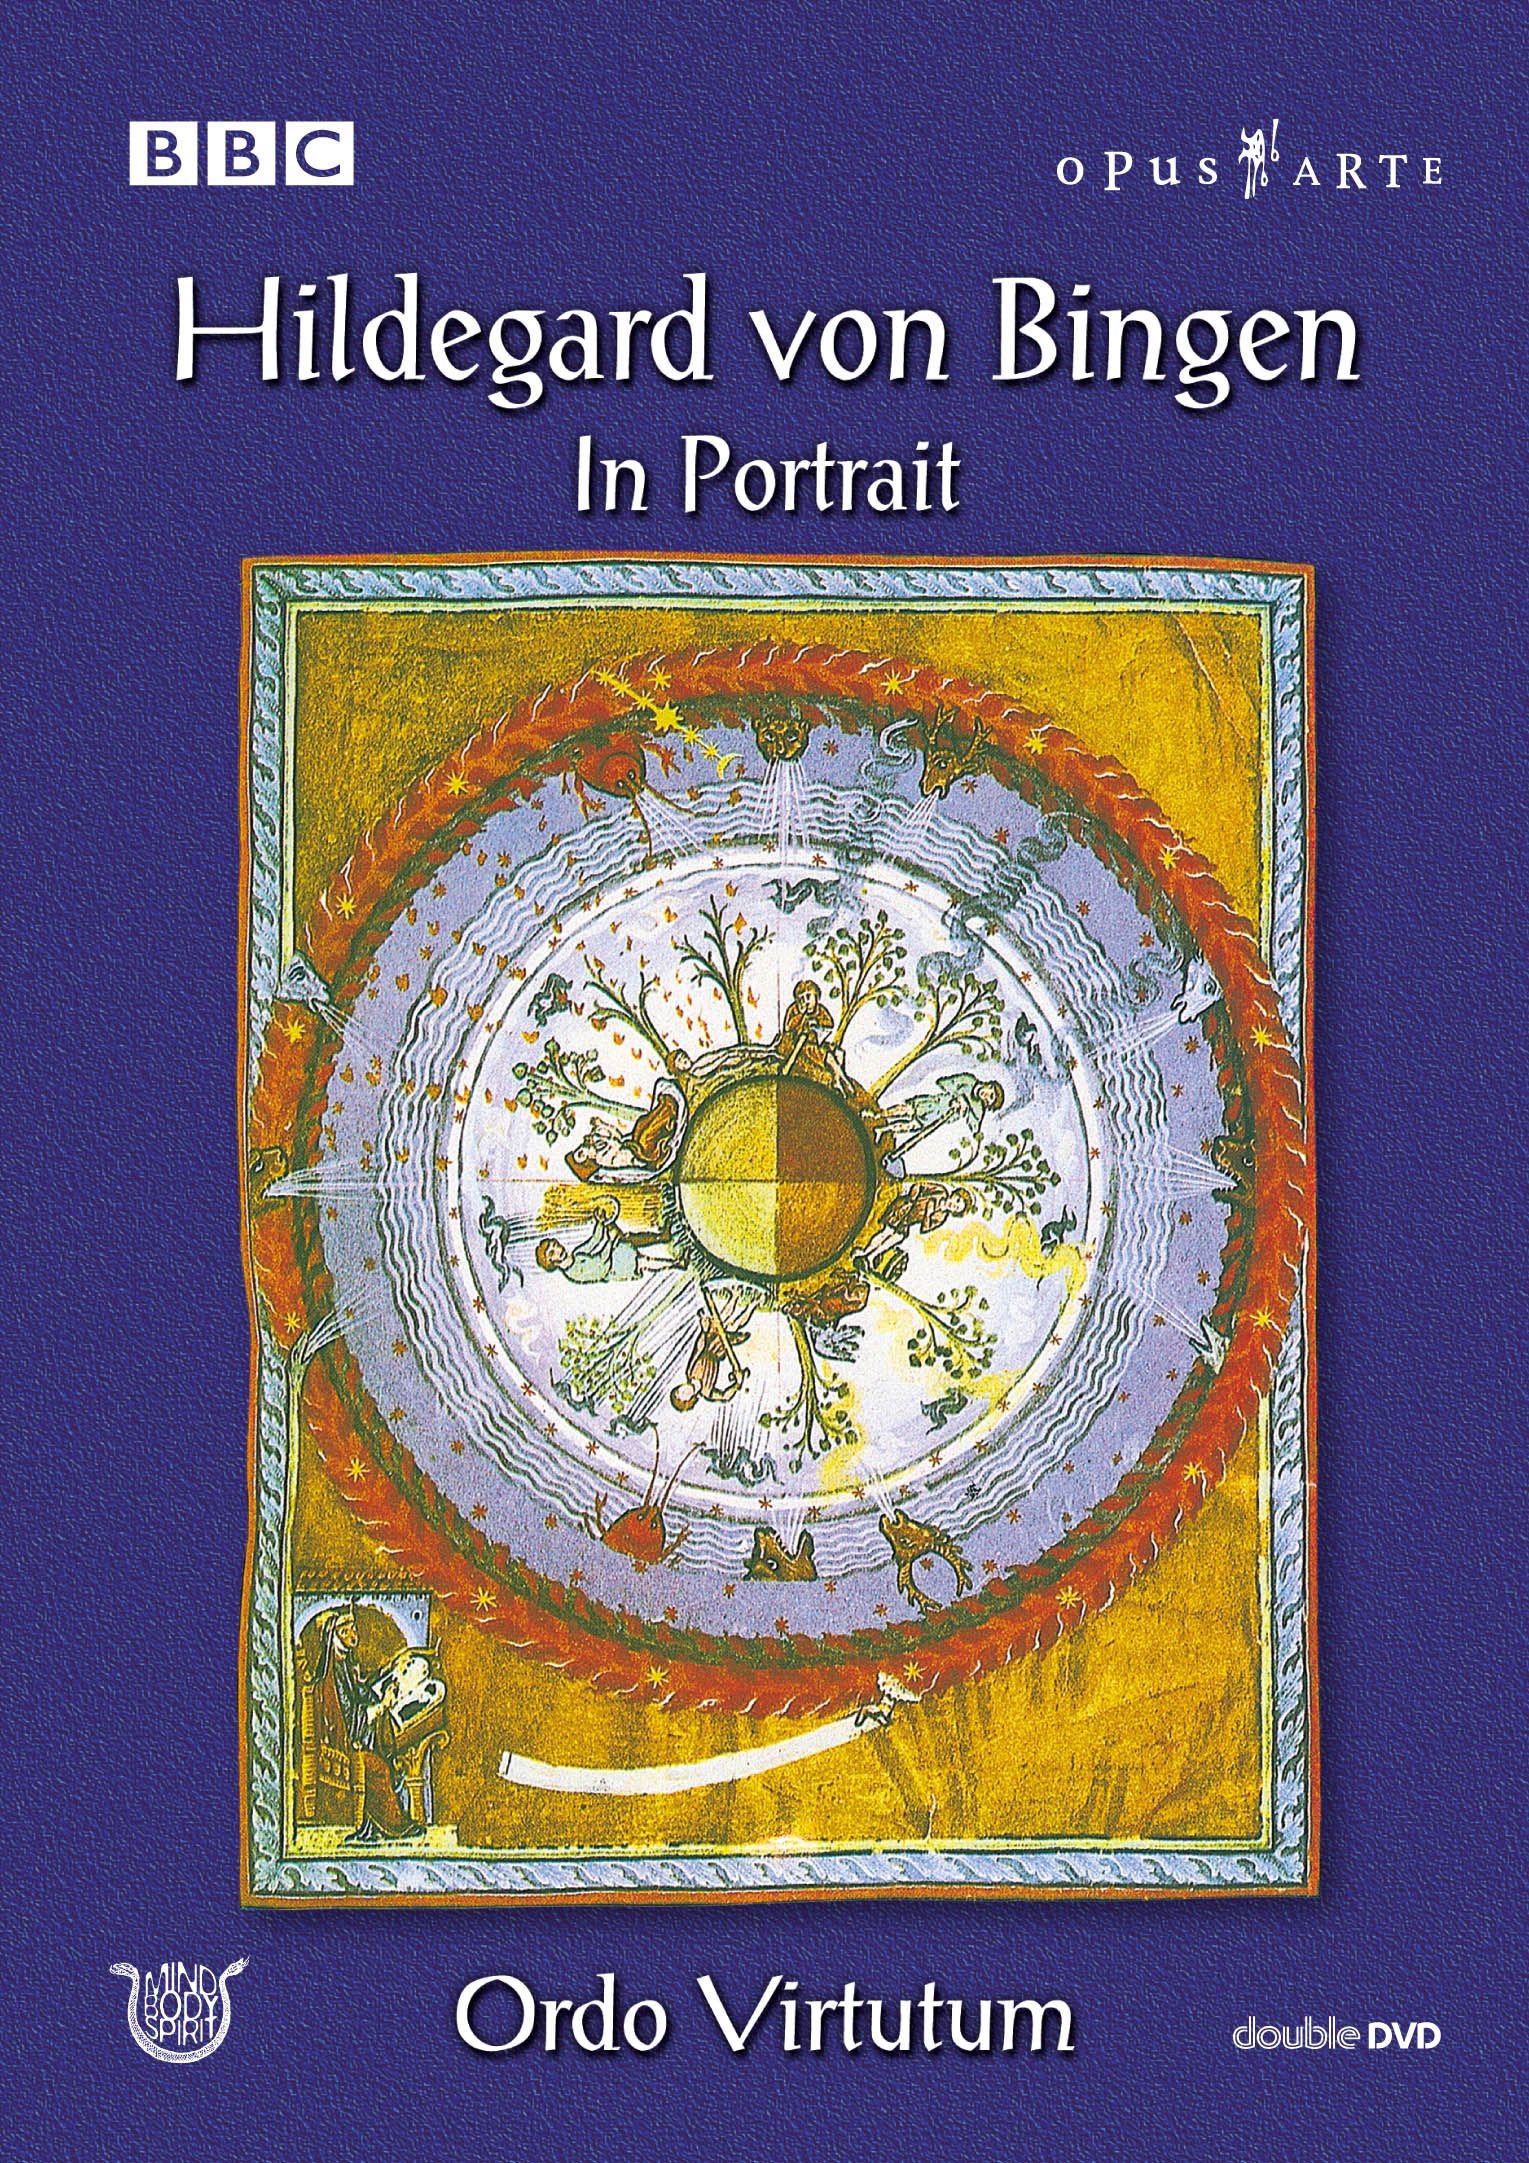 hildegard-von-bingen-hildegard-von-bingen-in-portrait-dvd-opus3a